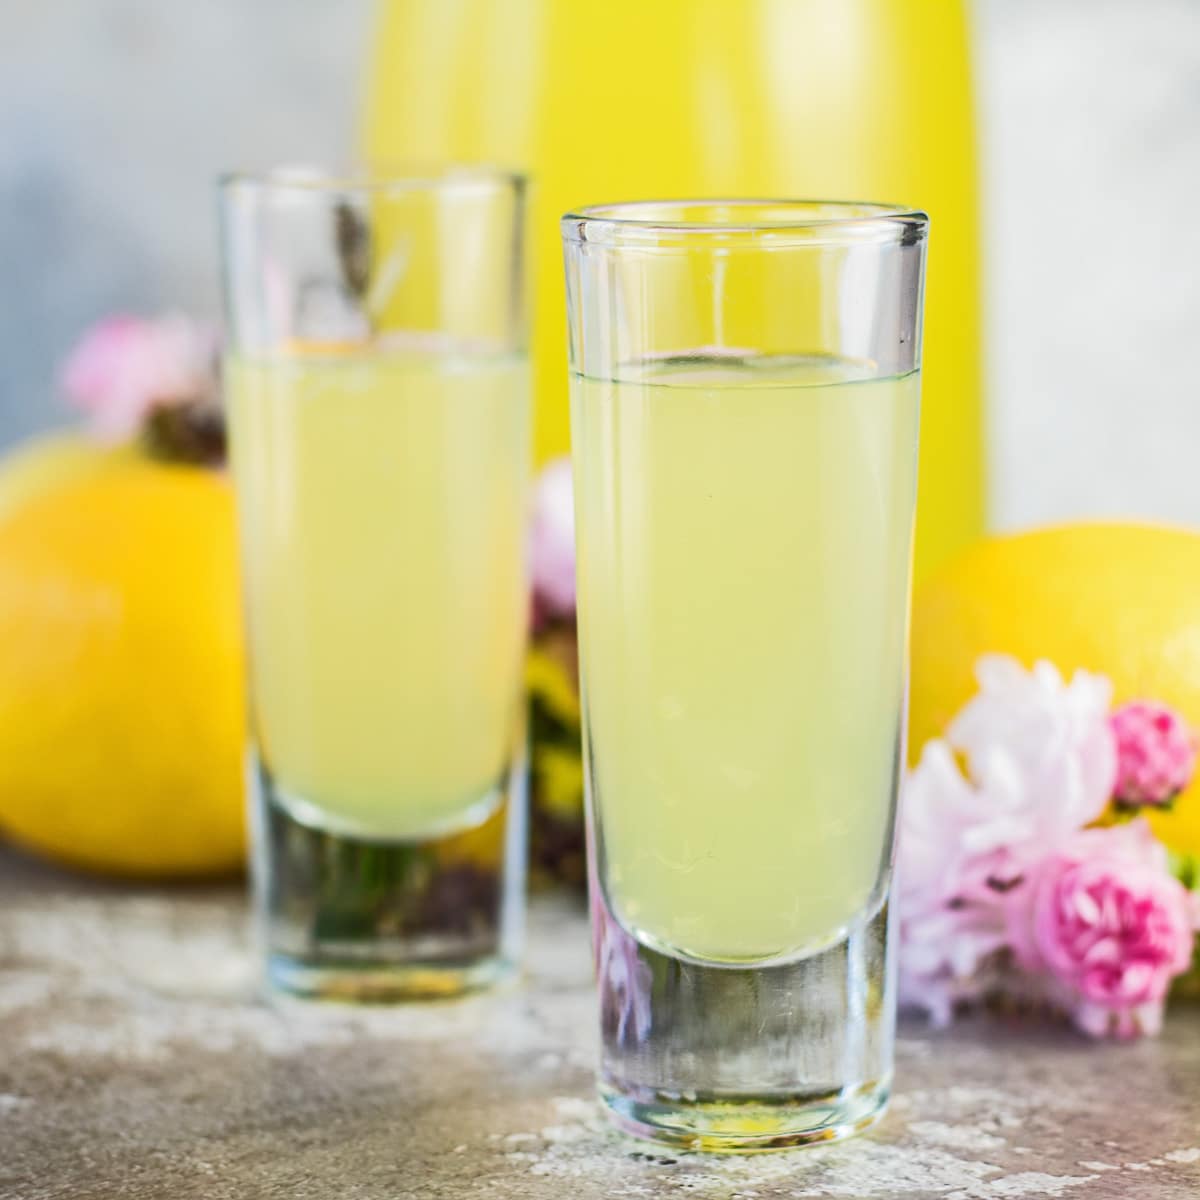 Lemoncello fatto in casa servito in bicchierini con frutta e fiori rosa in sottofondo.